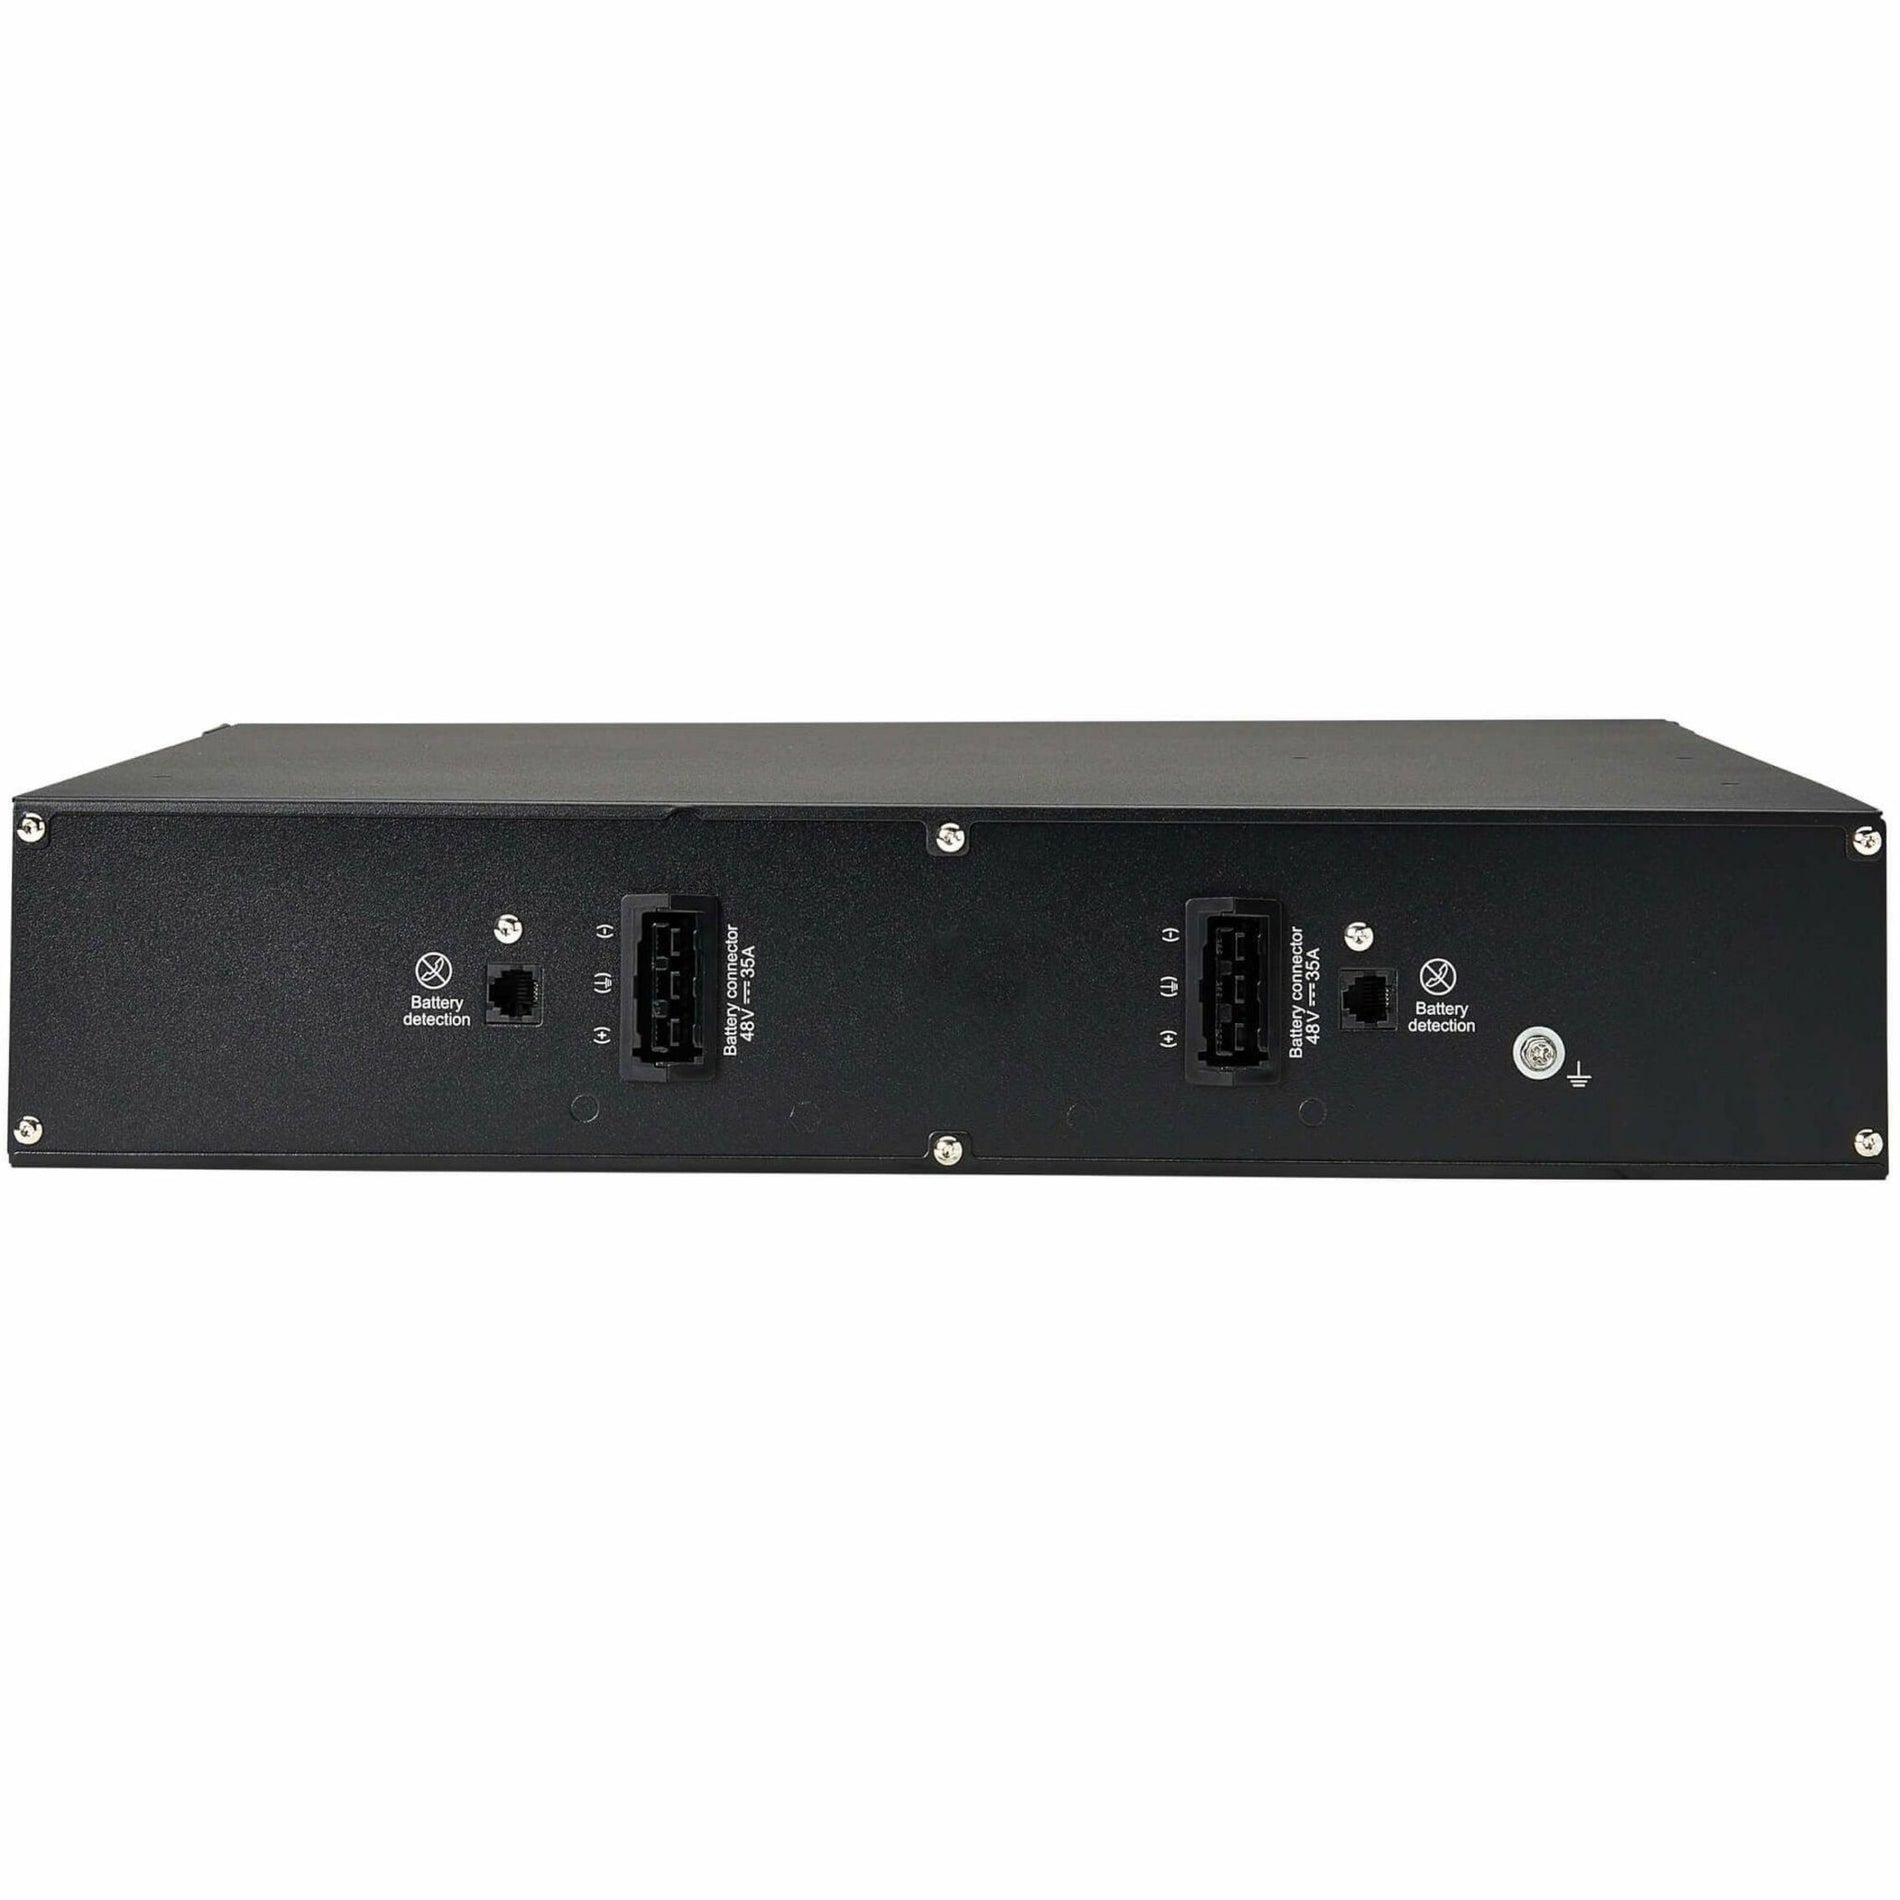 تريب لايت BP48RT 48 فولت  الوحدة الموسعة للبطارية نظام التشغيل المؤمّن عبر الإنترنت رف/برج 2U موديل البطارية